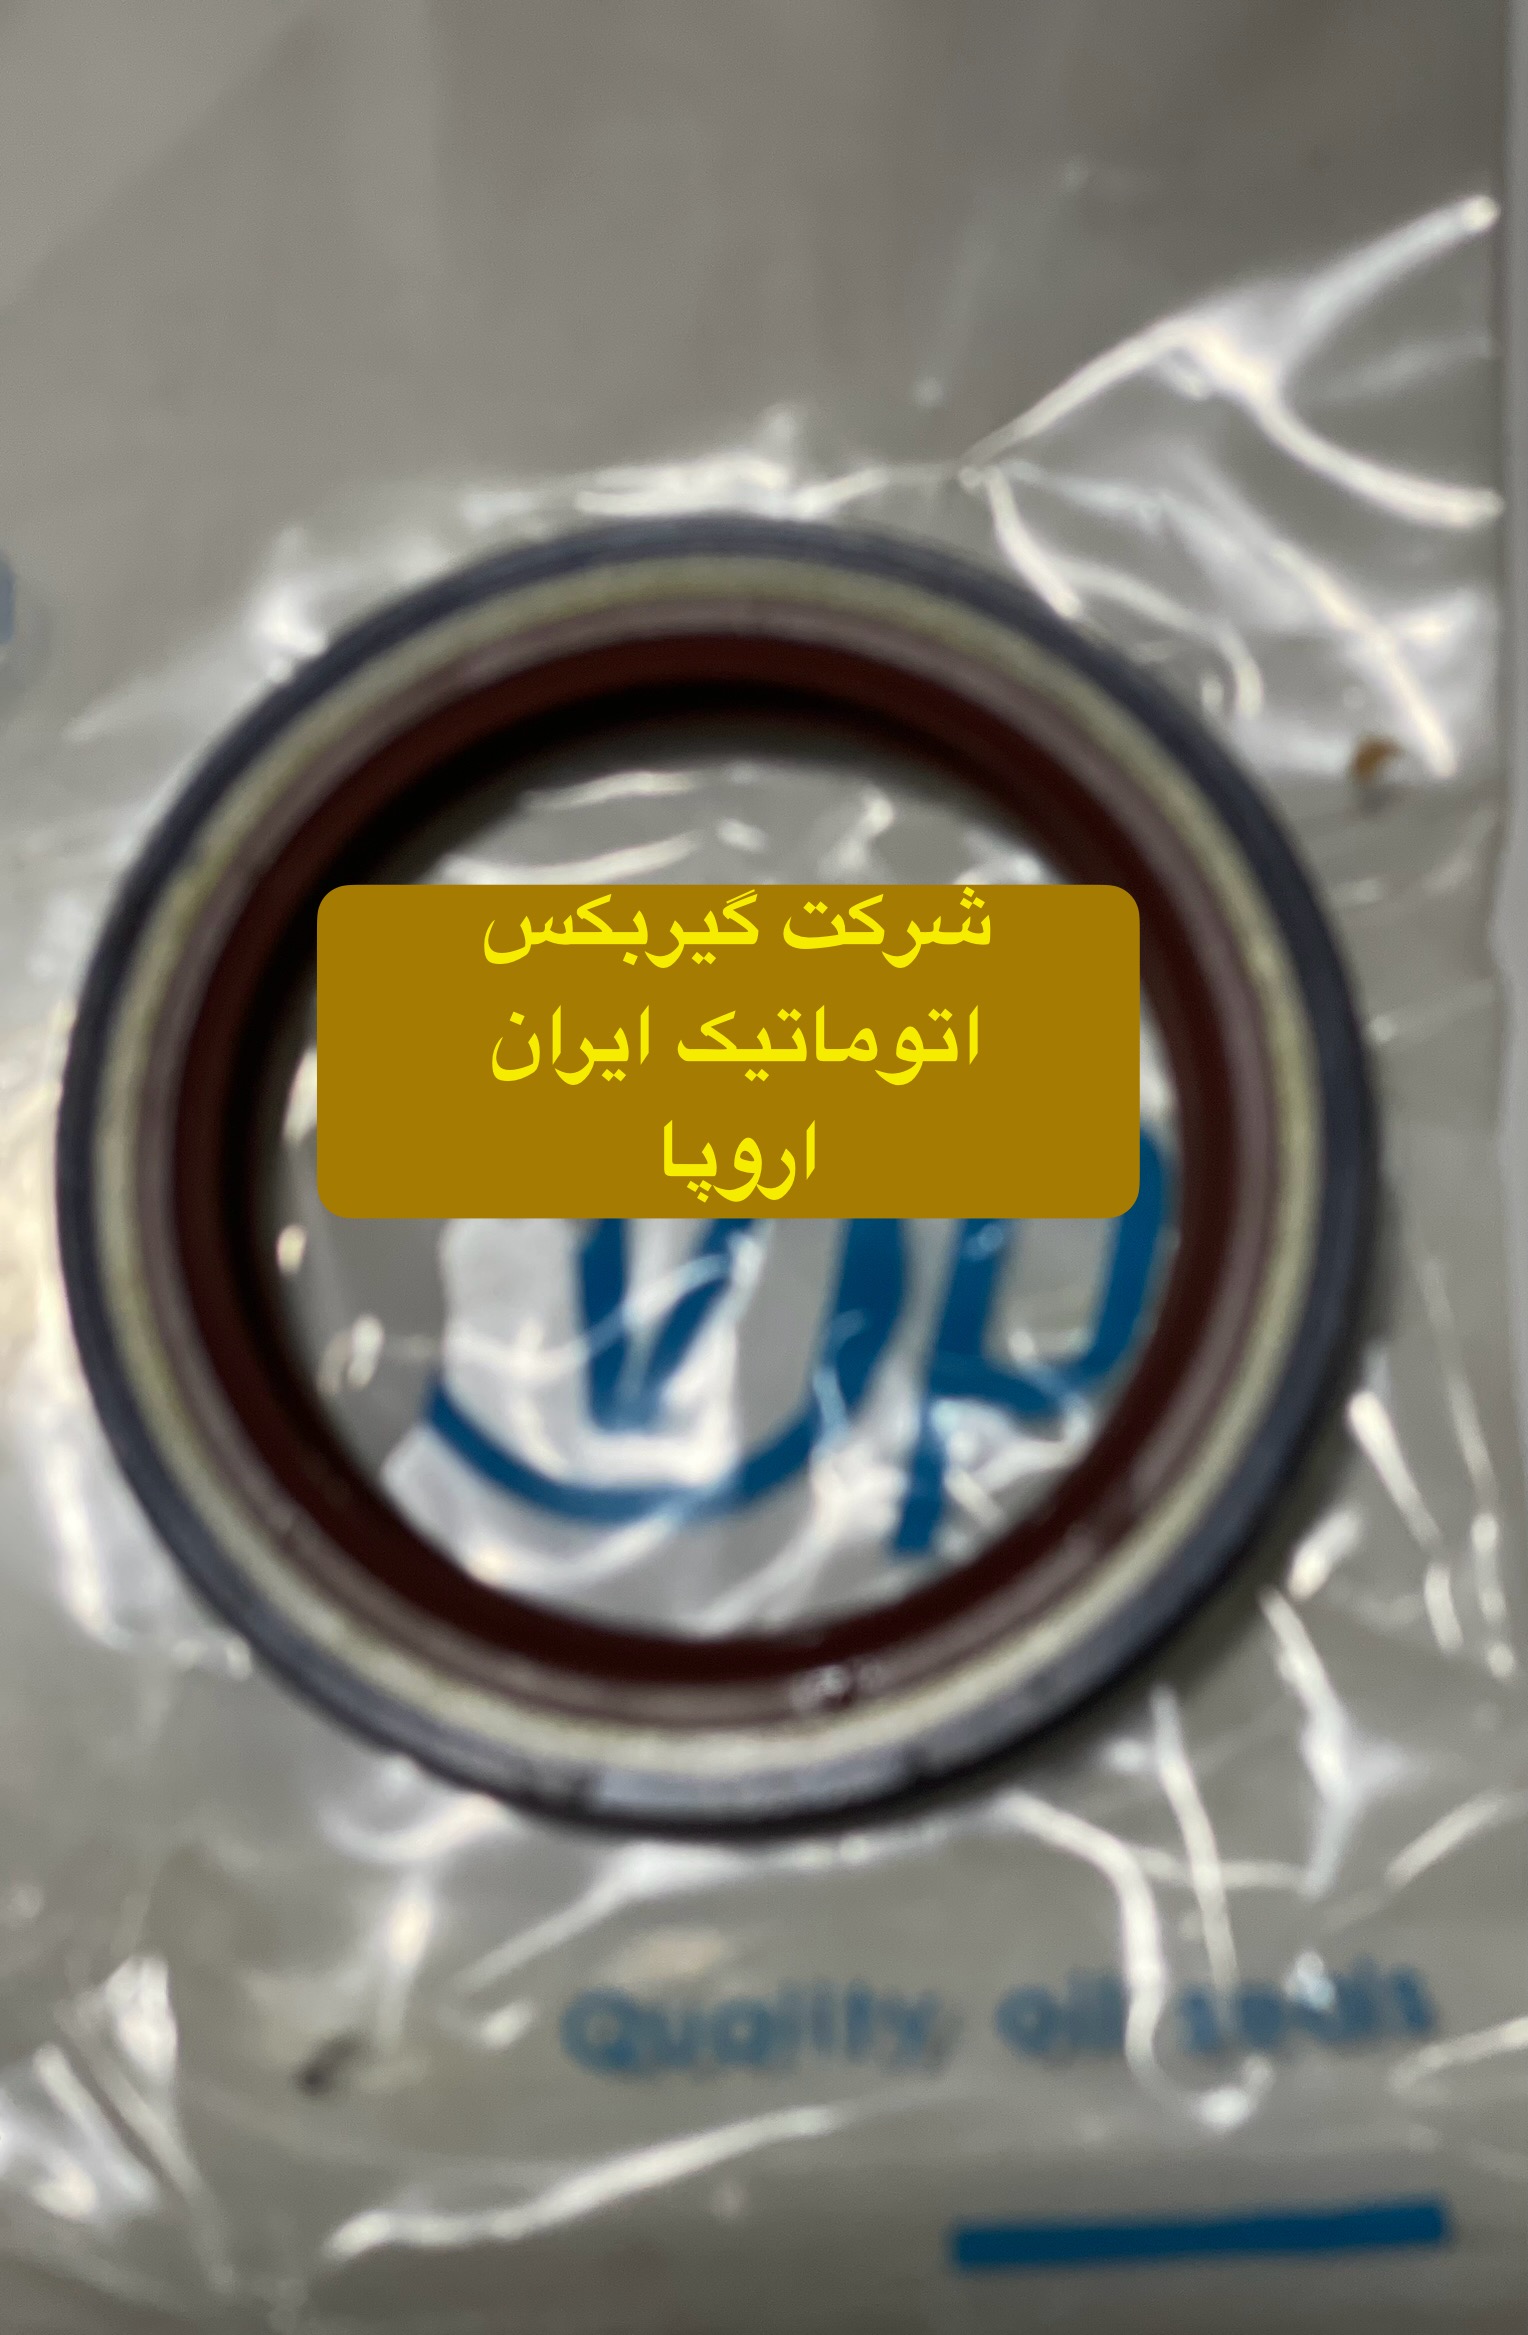 شرکت (تعمیرگاه) گیربکس اتوماتیک ایران اروپا فروش کاسه نمد اویل پمب گیربکس اتوماتیک رنوساندرو